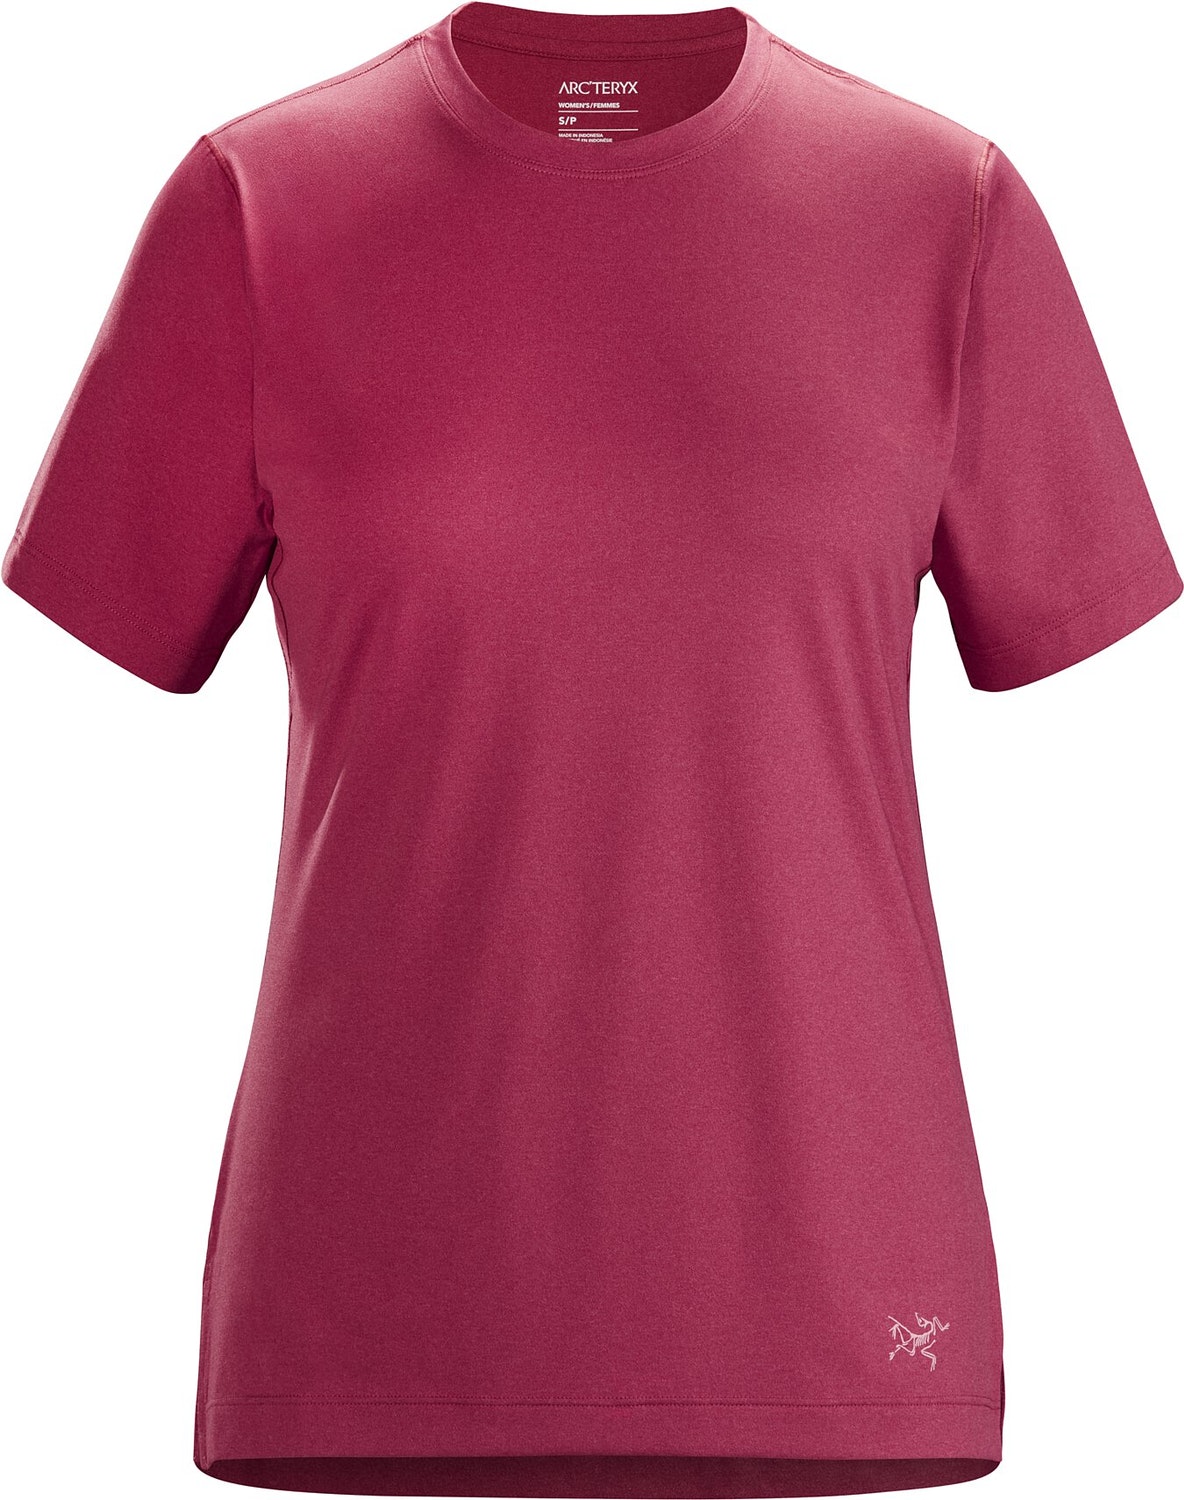 T-shirt Arc'teryx Remige Donna Bordeaux - IT-73145